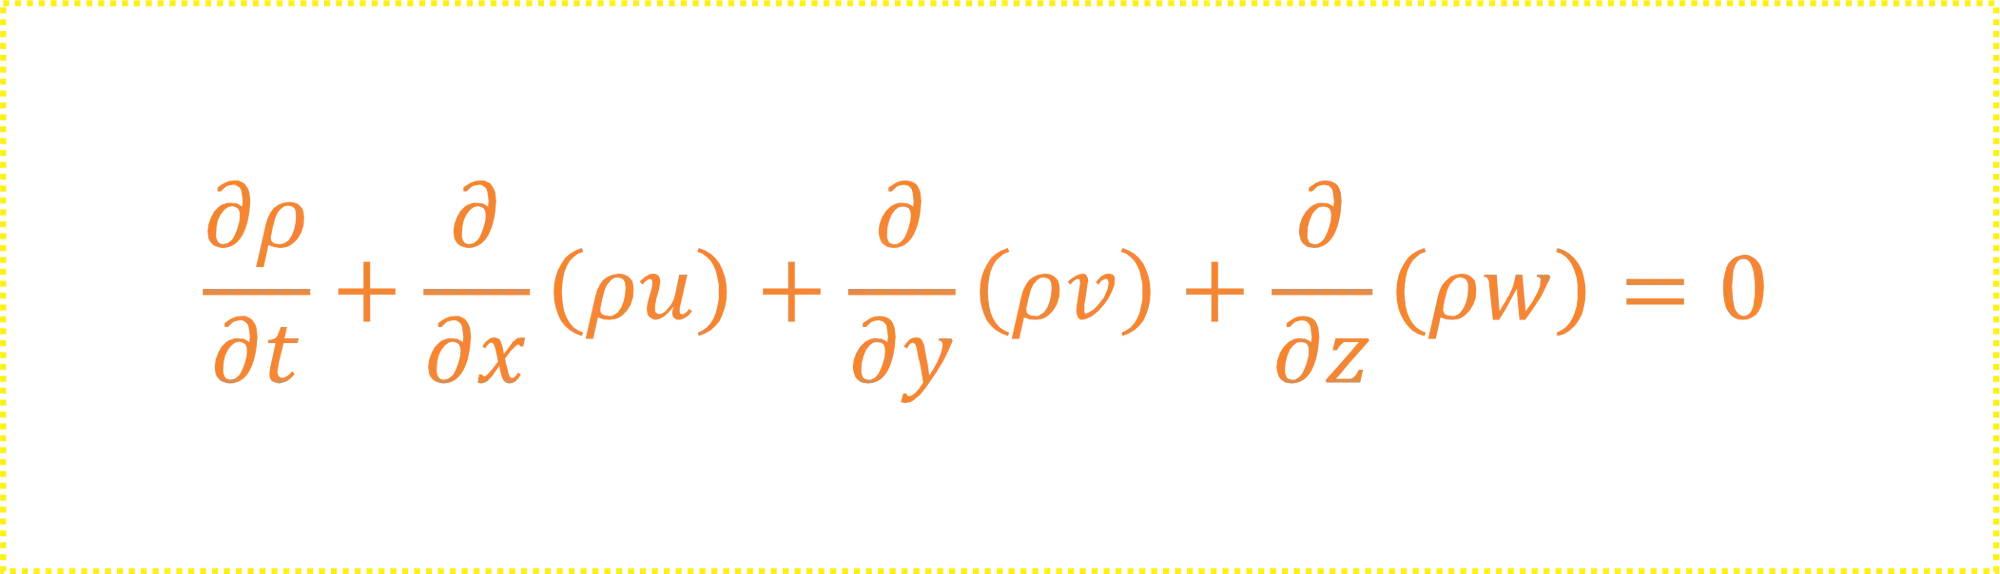 Equação Diferencial da Continuidade.